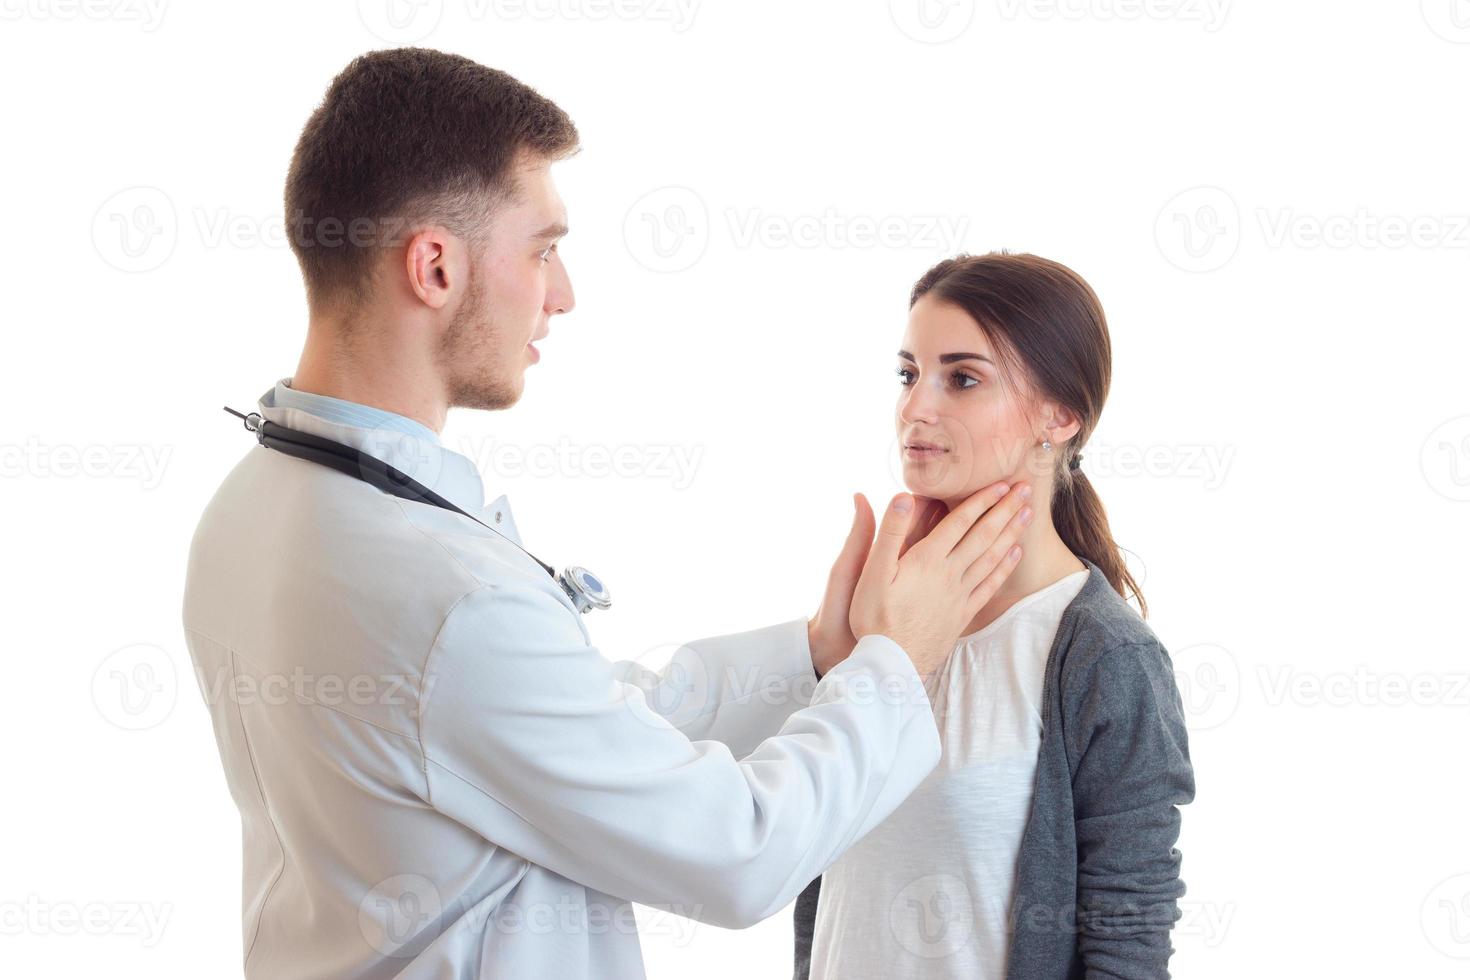 jovem médico examina mãos garganta linda garota close-up foto